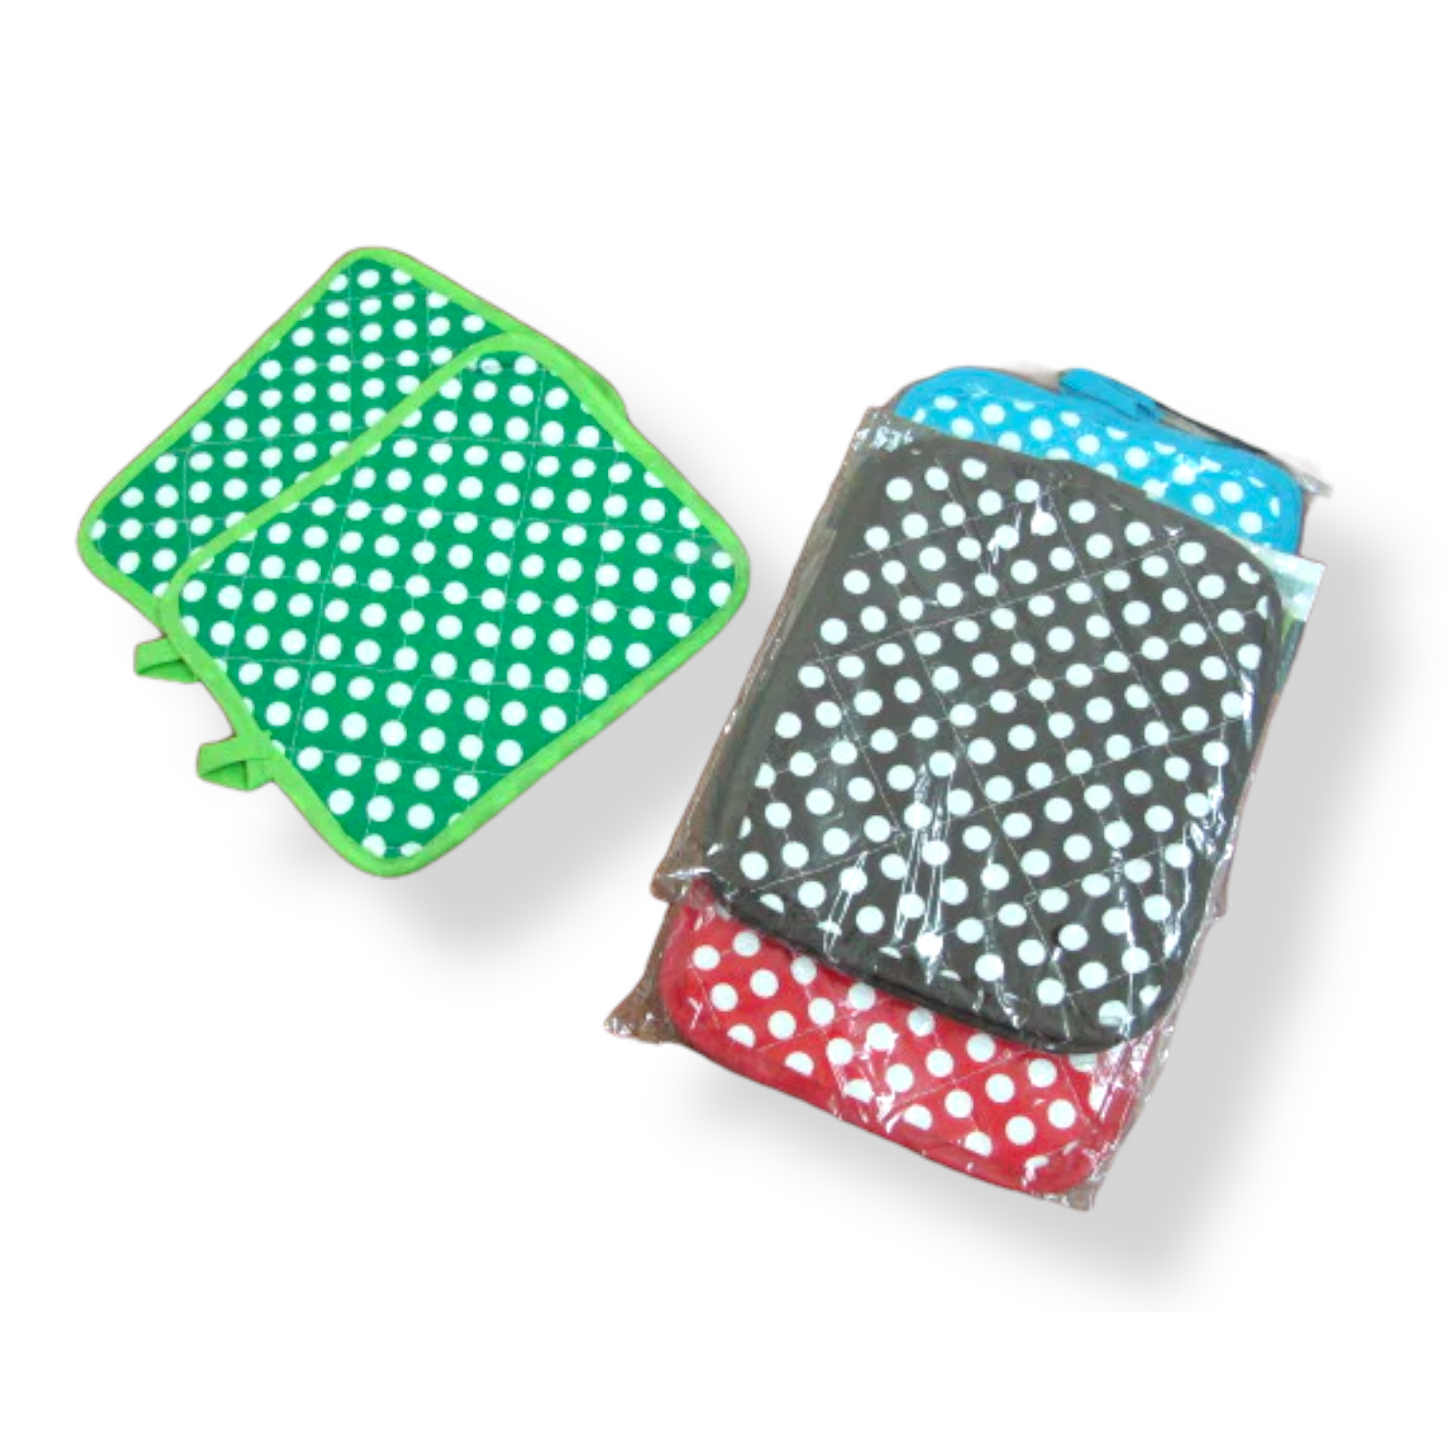 Polka dots heat pad holder - Lunaz Shop